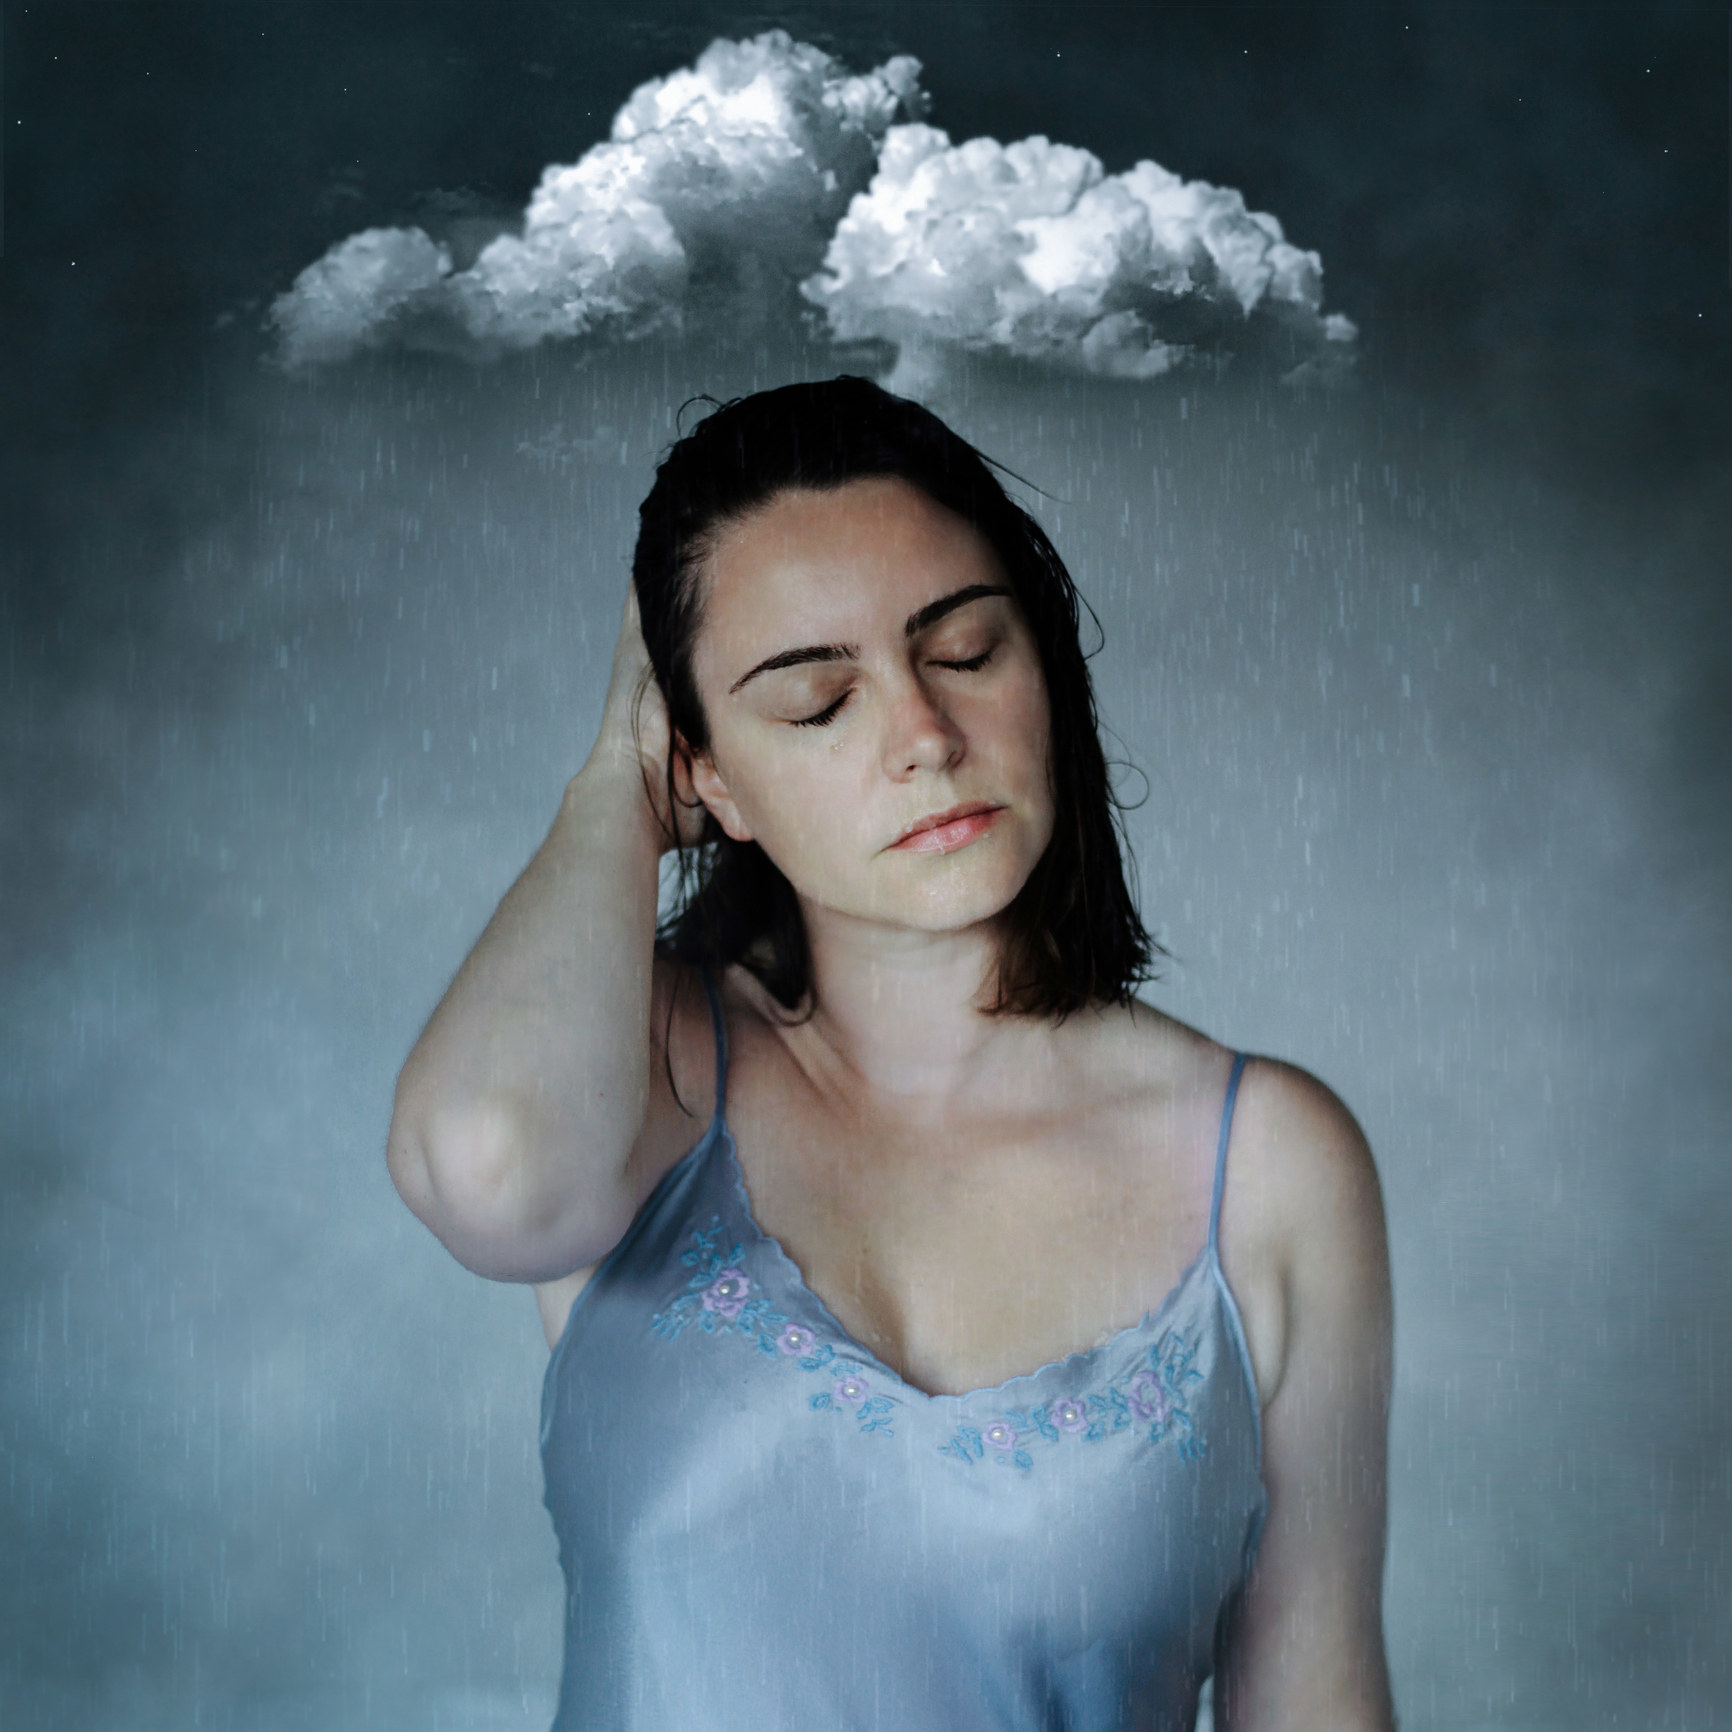 Solemn woman under a raincloud